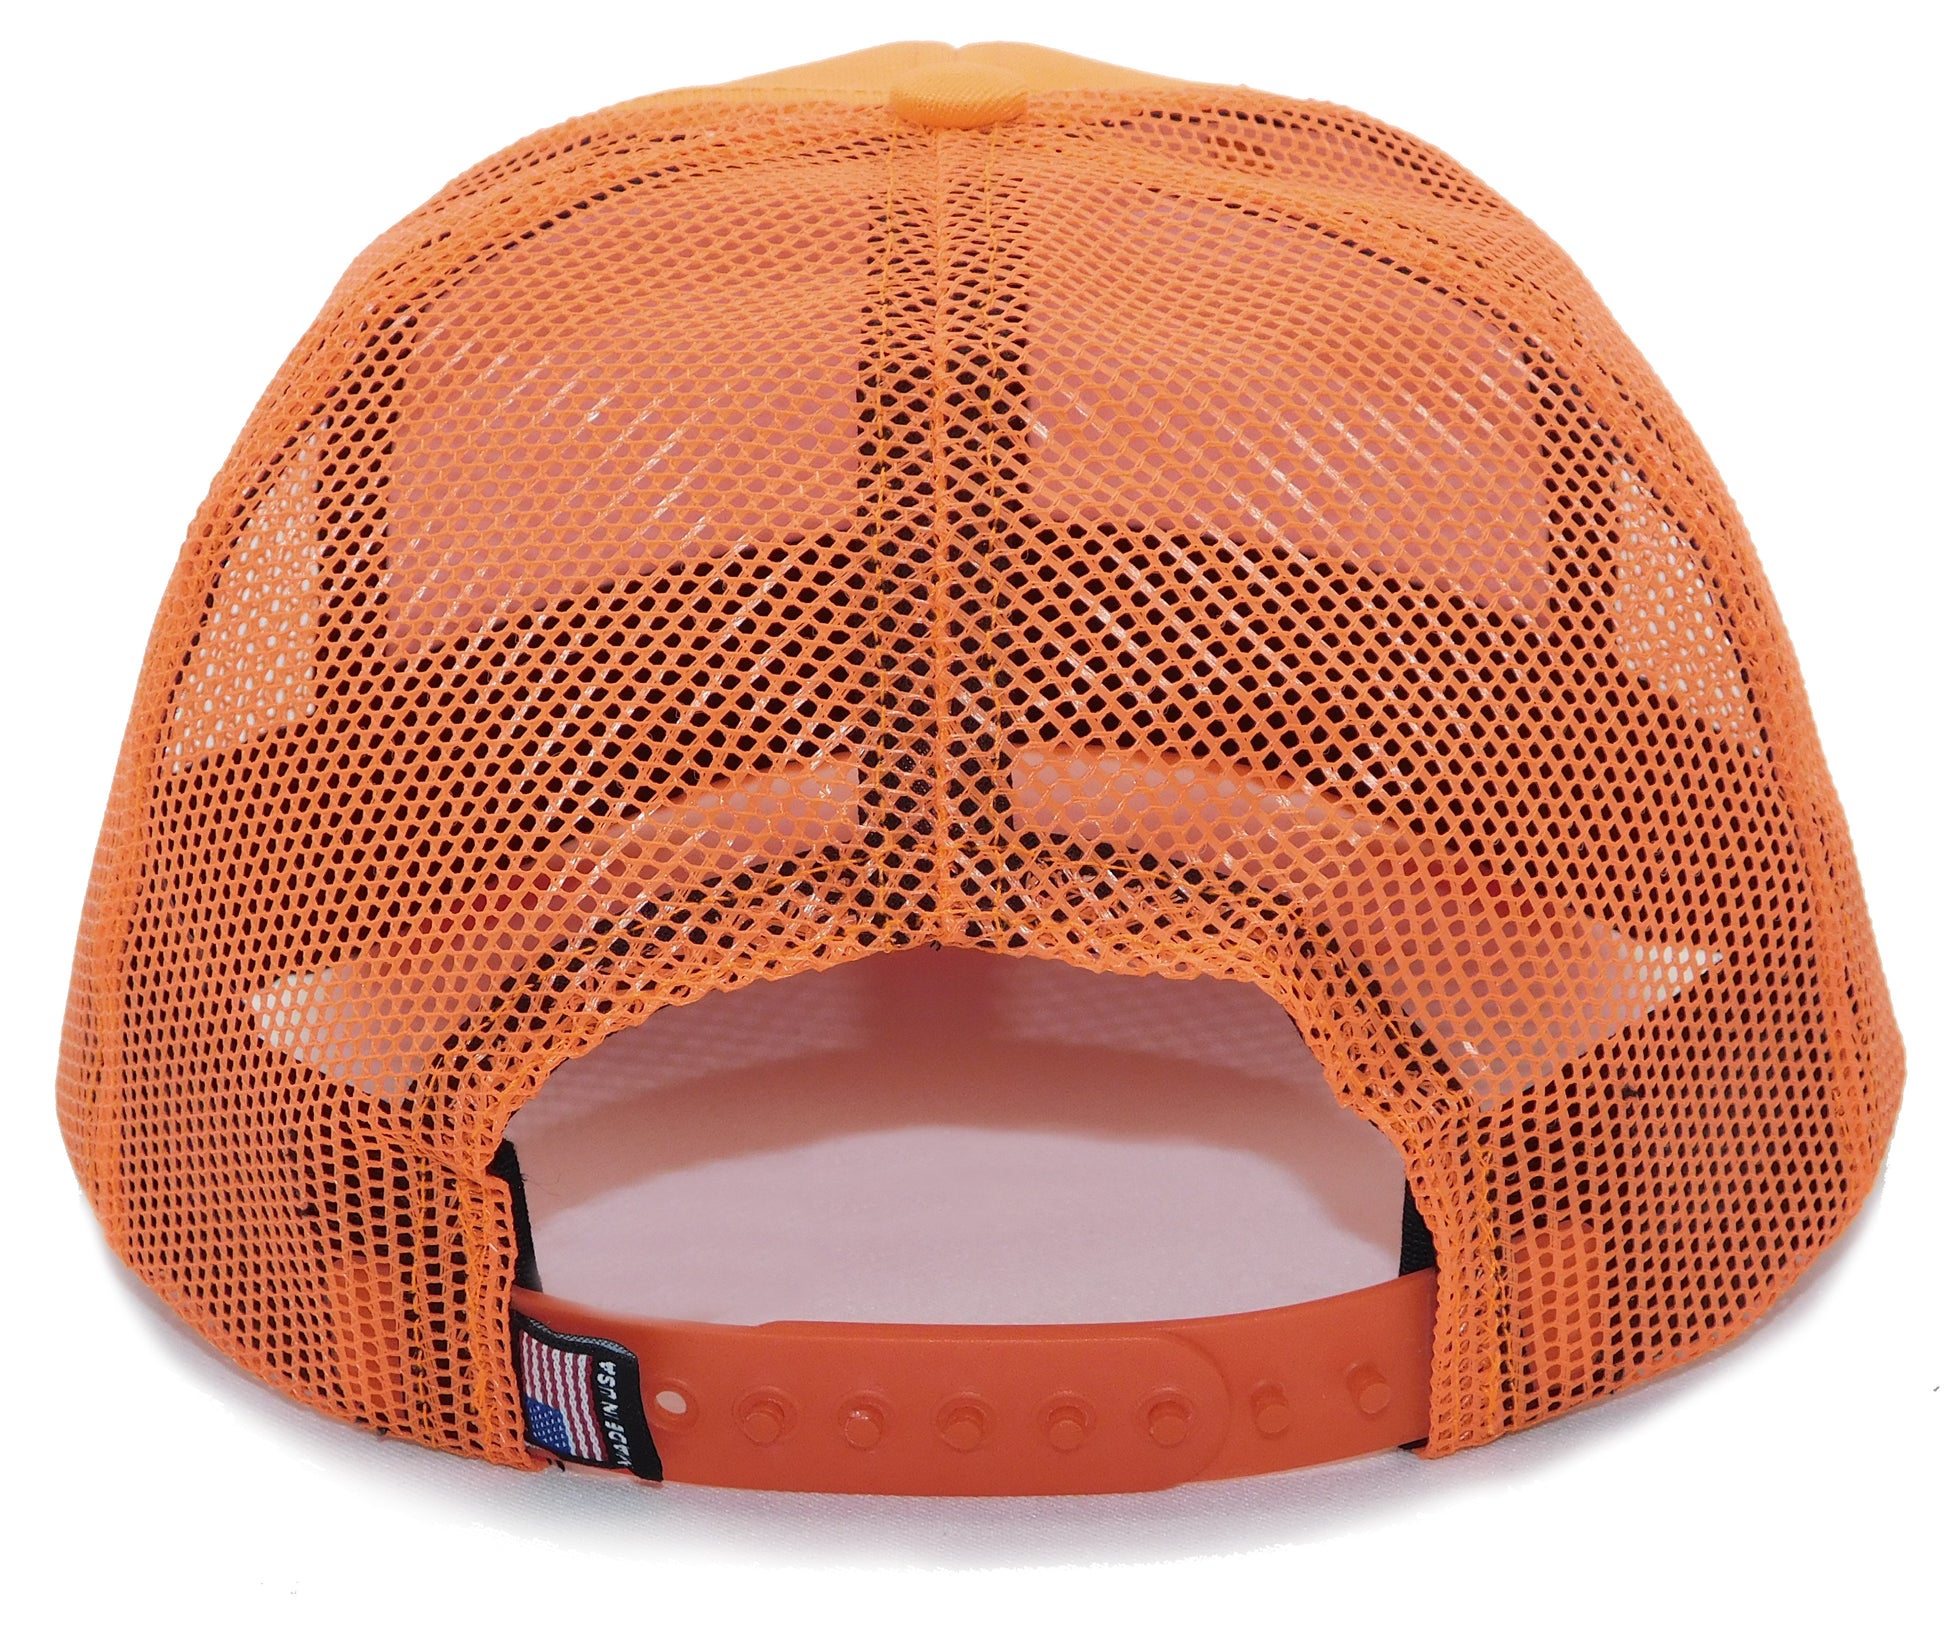 Blank Trucker Hats | Mesh Trucker Hats Blaze Orange